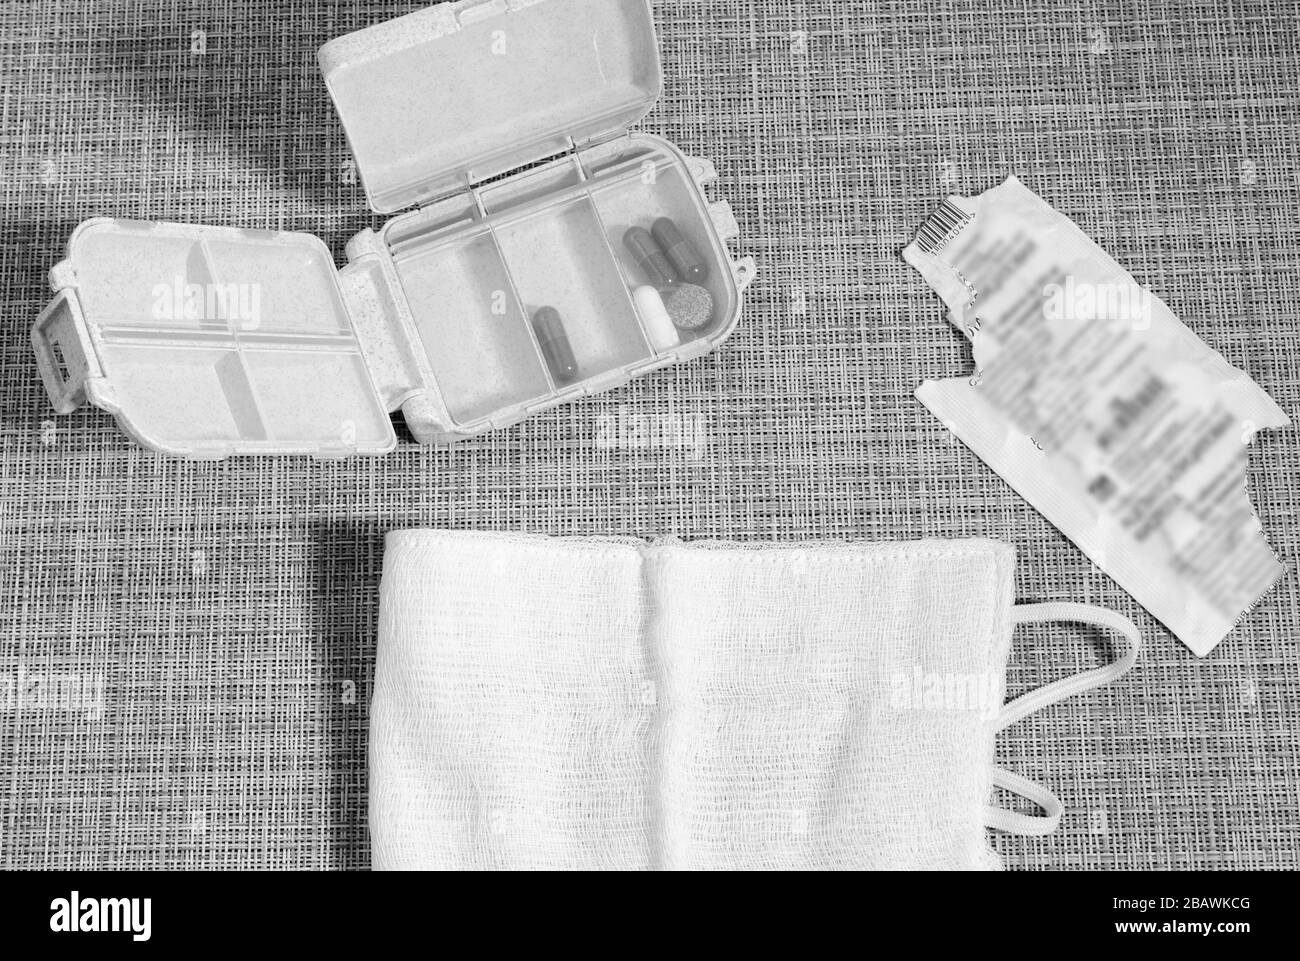 Scatola per pillola e maschera medica. Pillole sul tavolo. Texture in vimini. Immagine in bianco e nero. Foto Stock